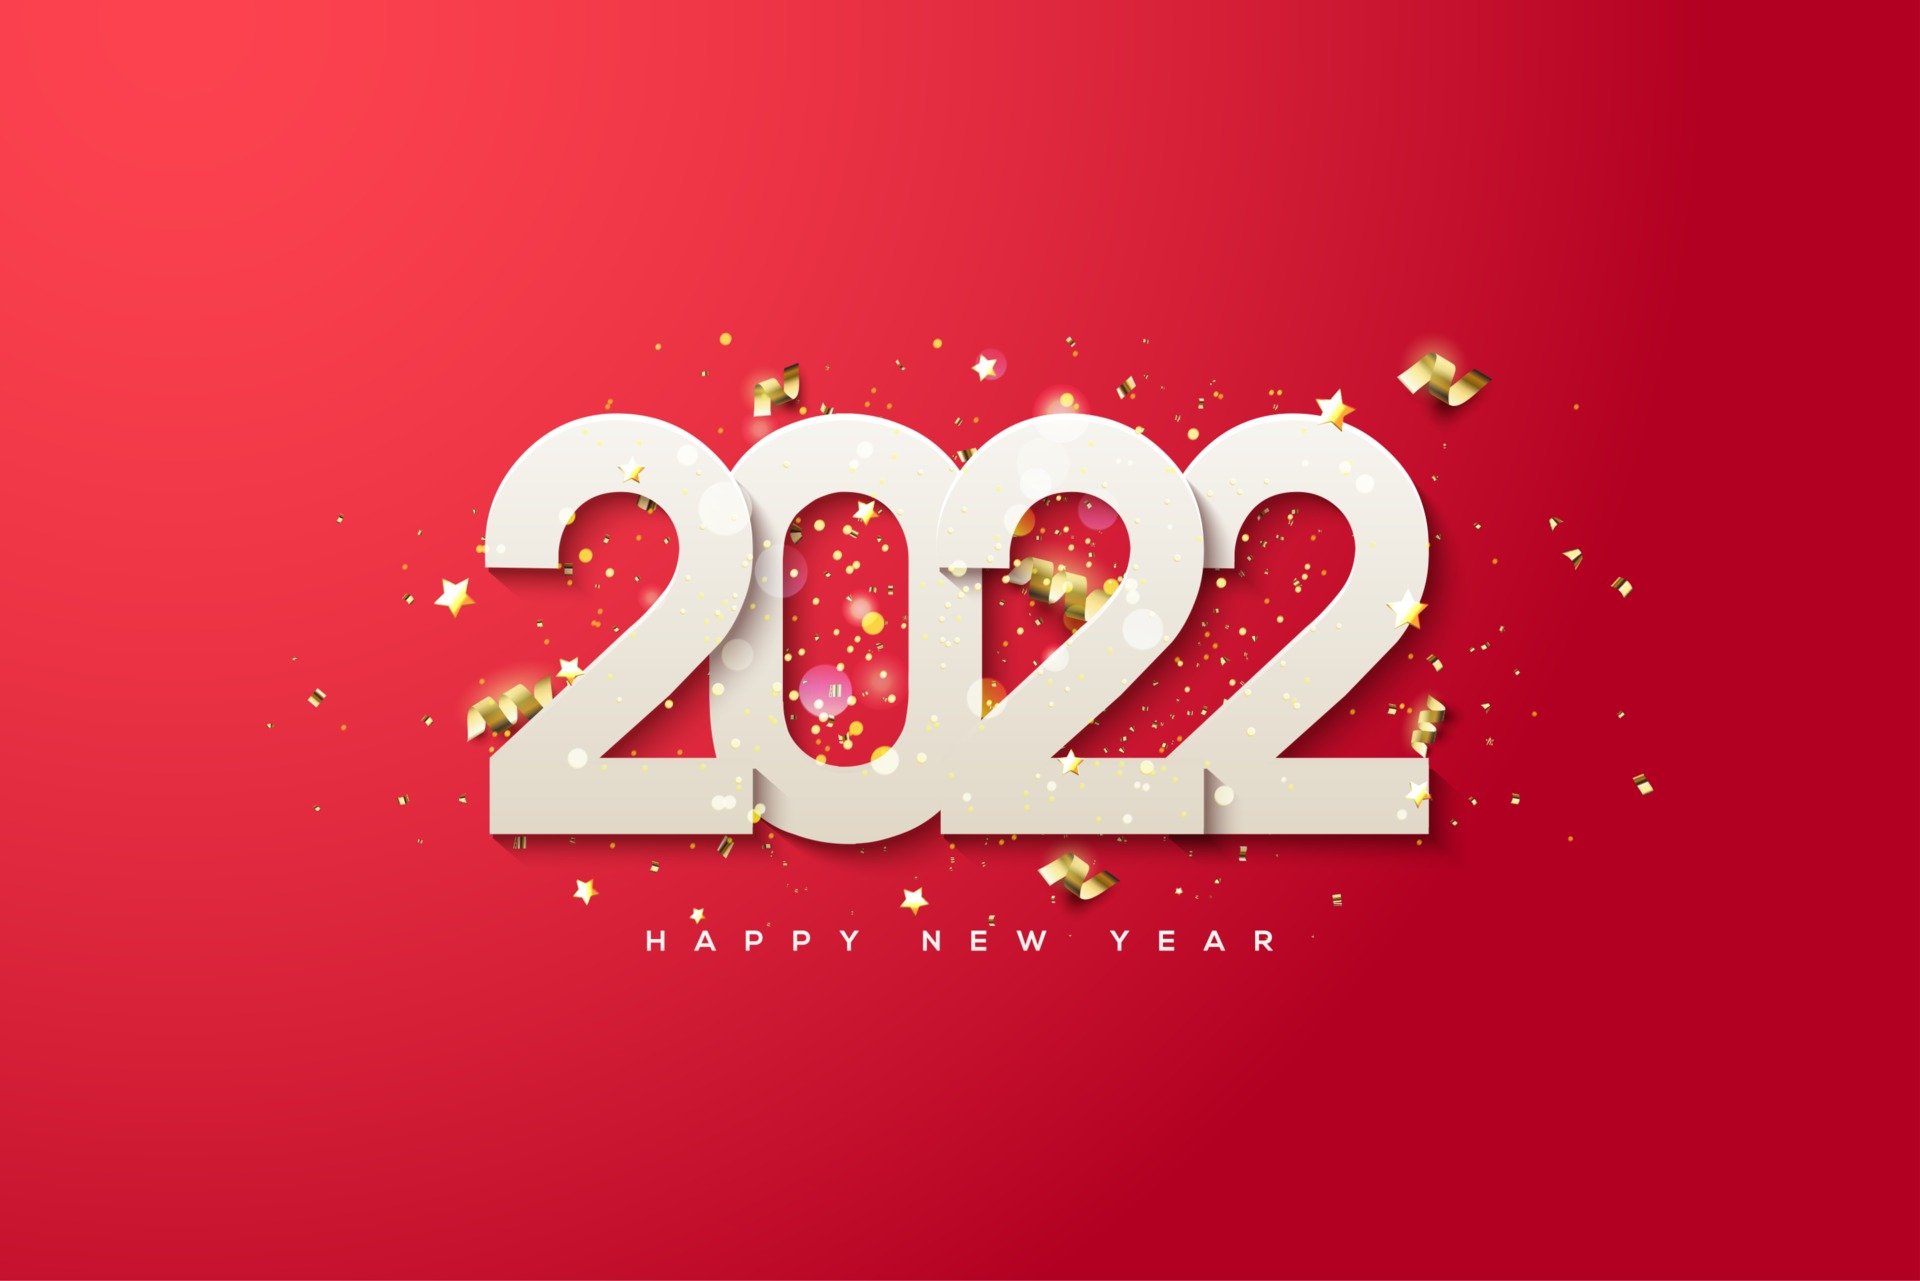 Background chúc mừng năm mới 2022 đẹp tuyệt